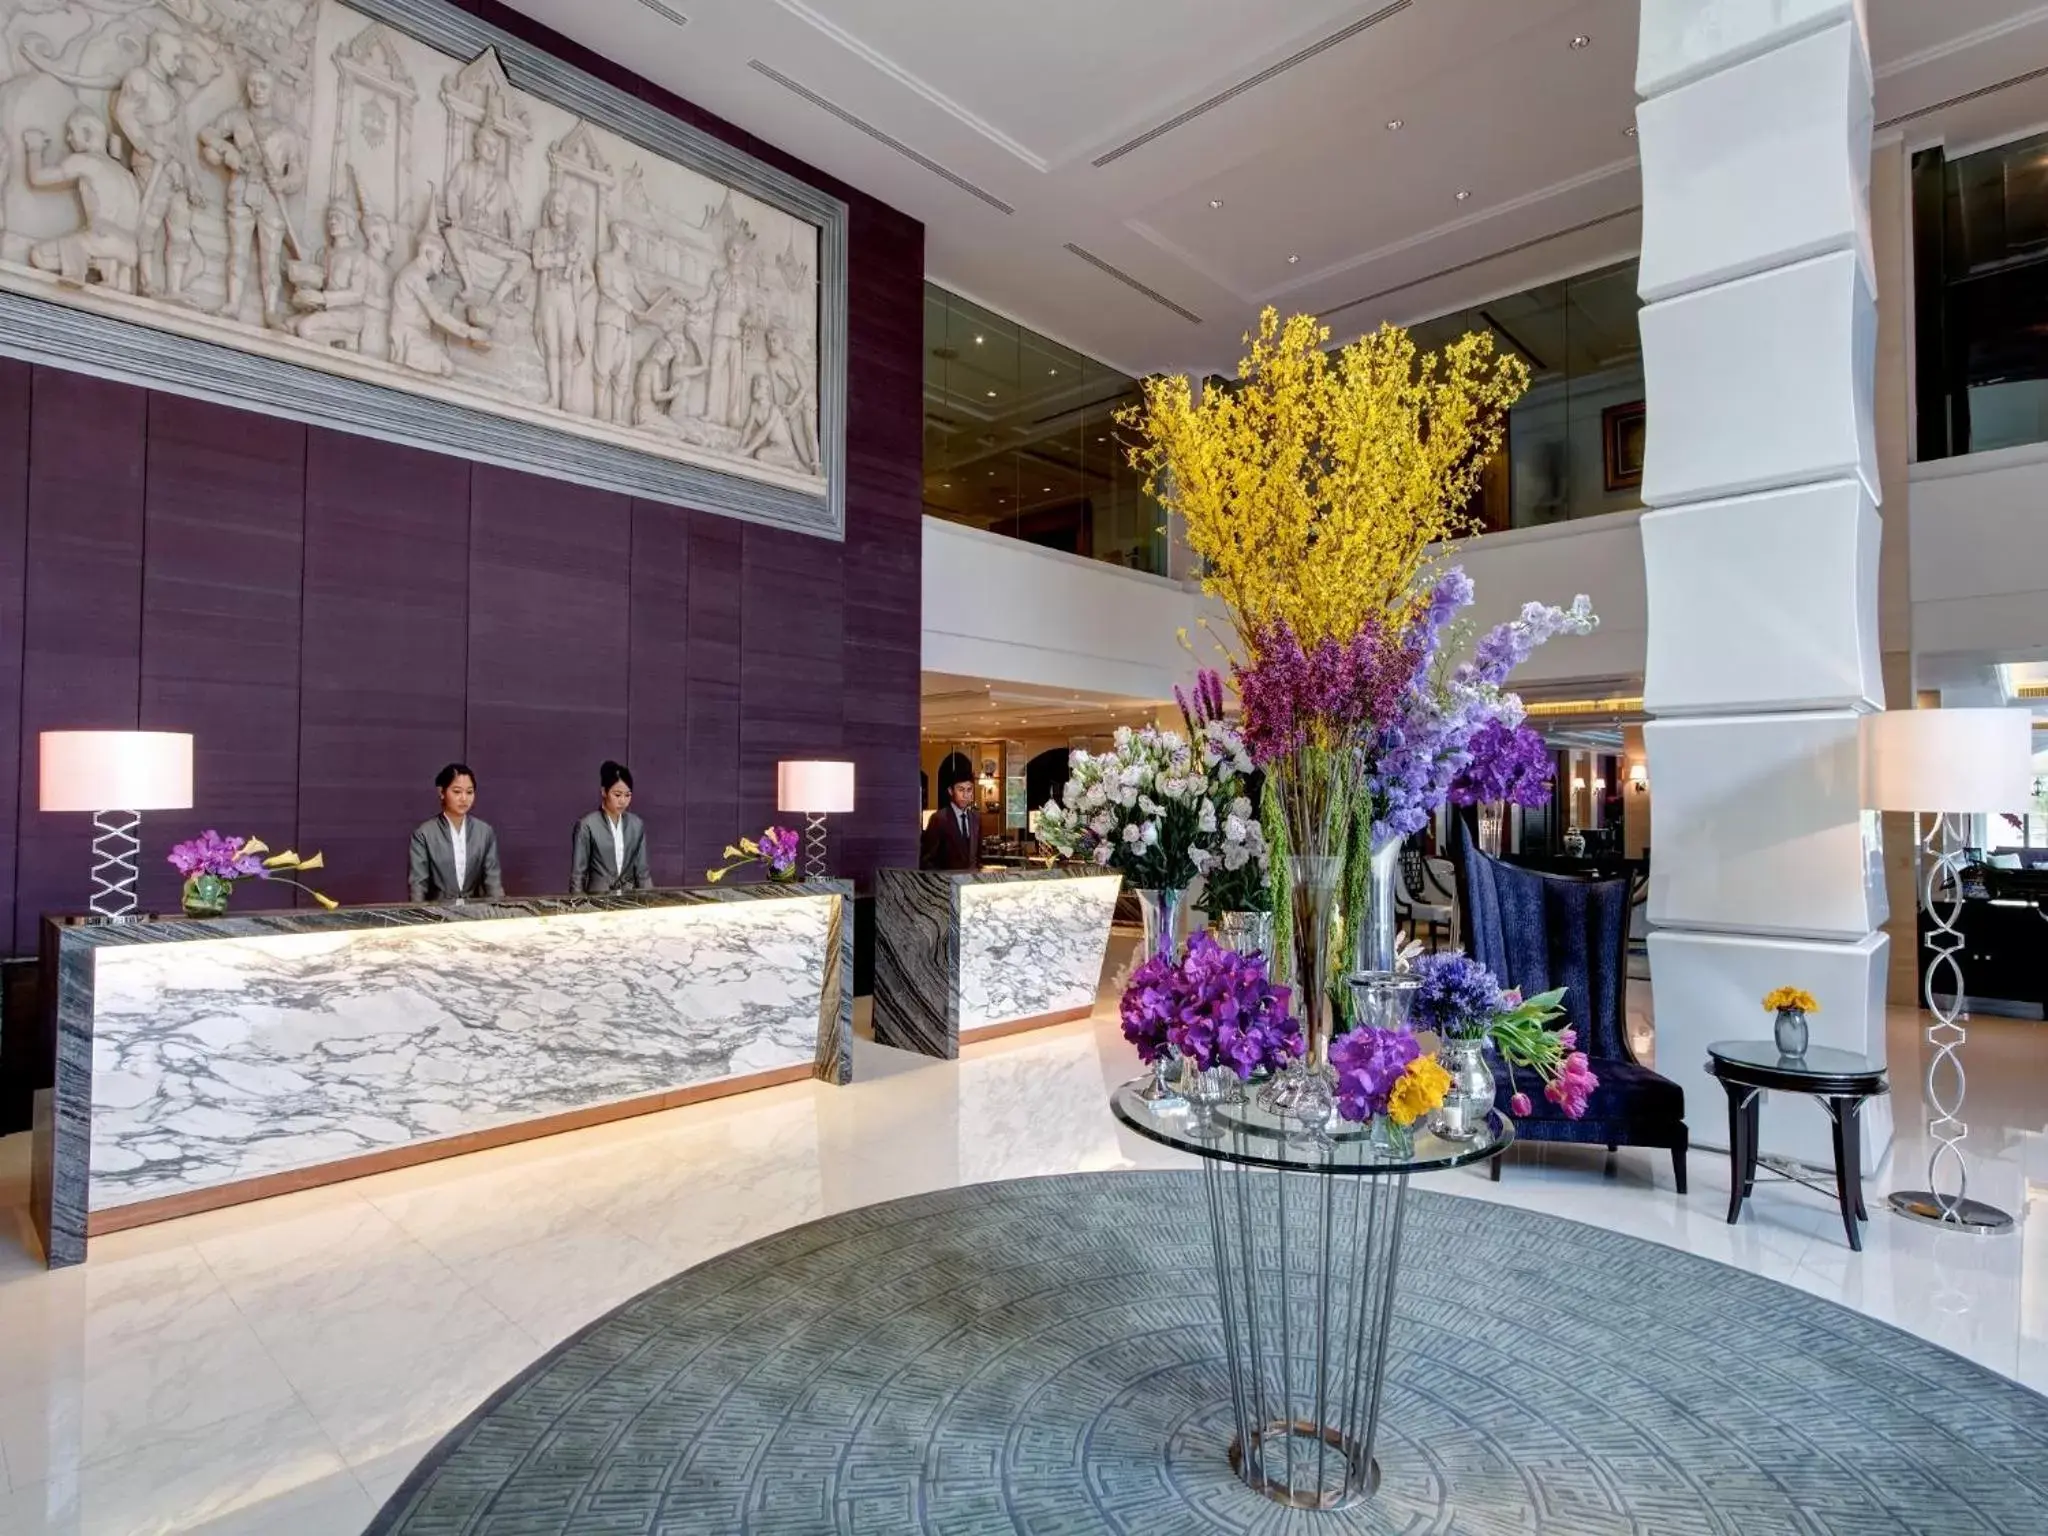 Lobby or reception in The Sukosol Hotel